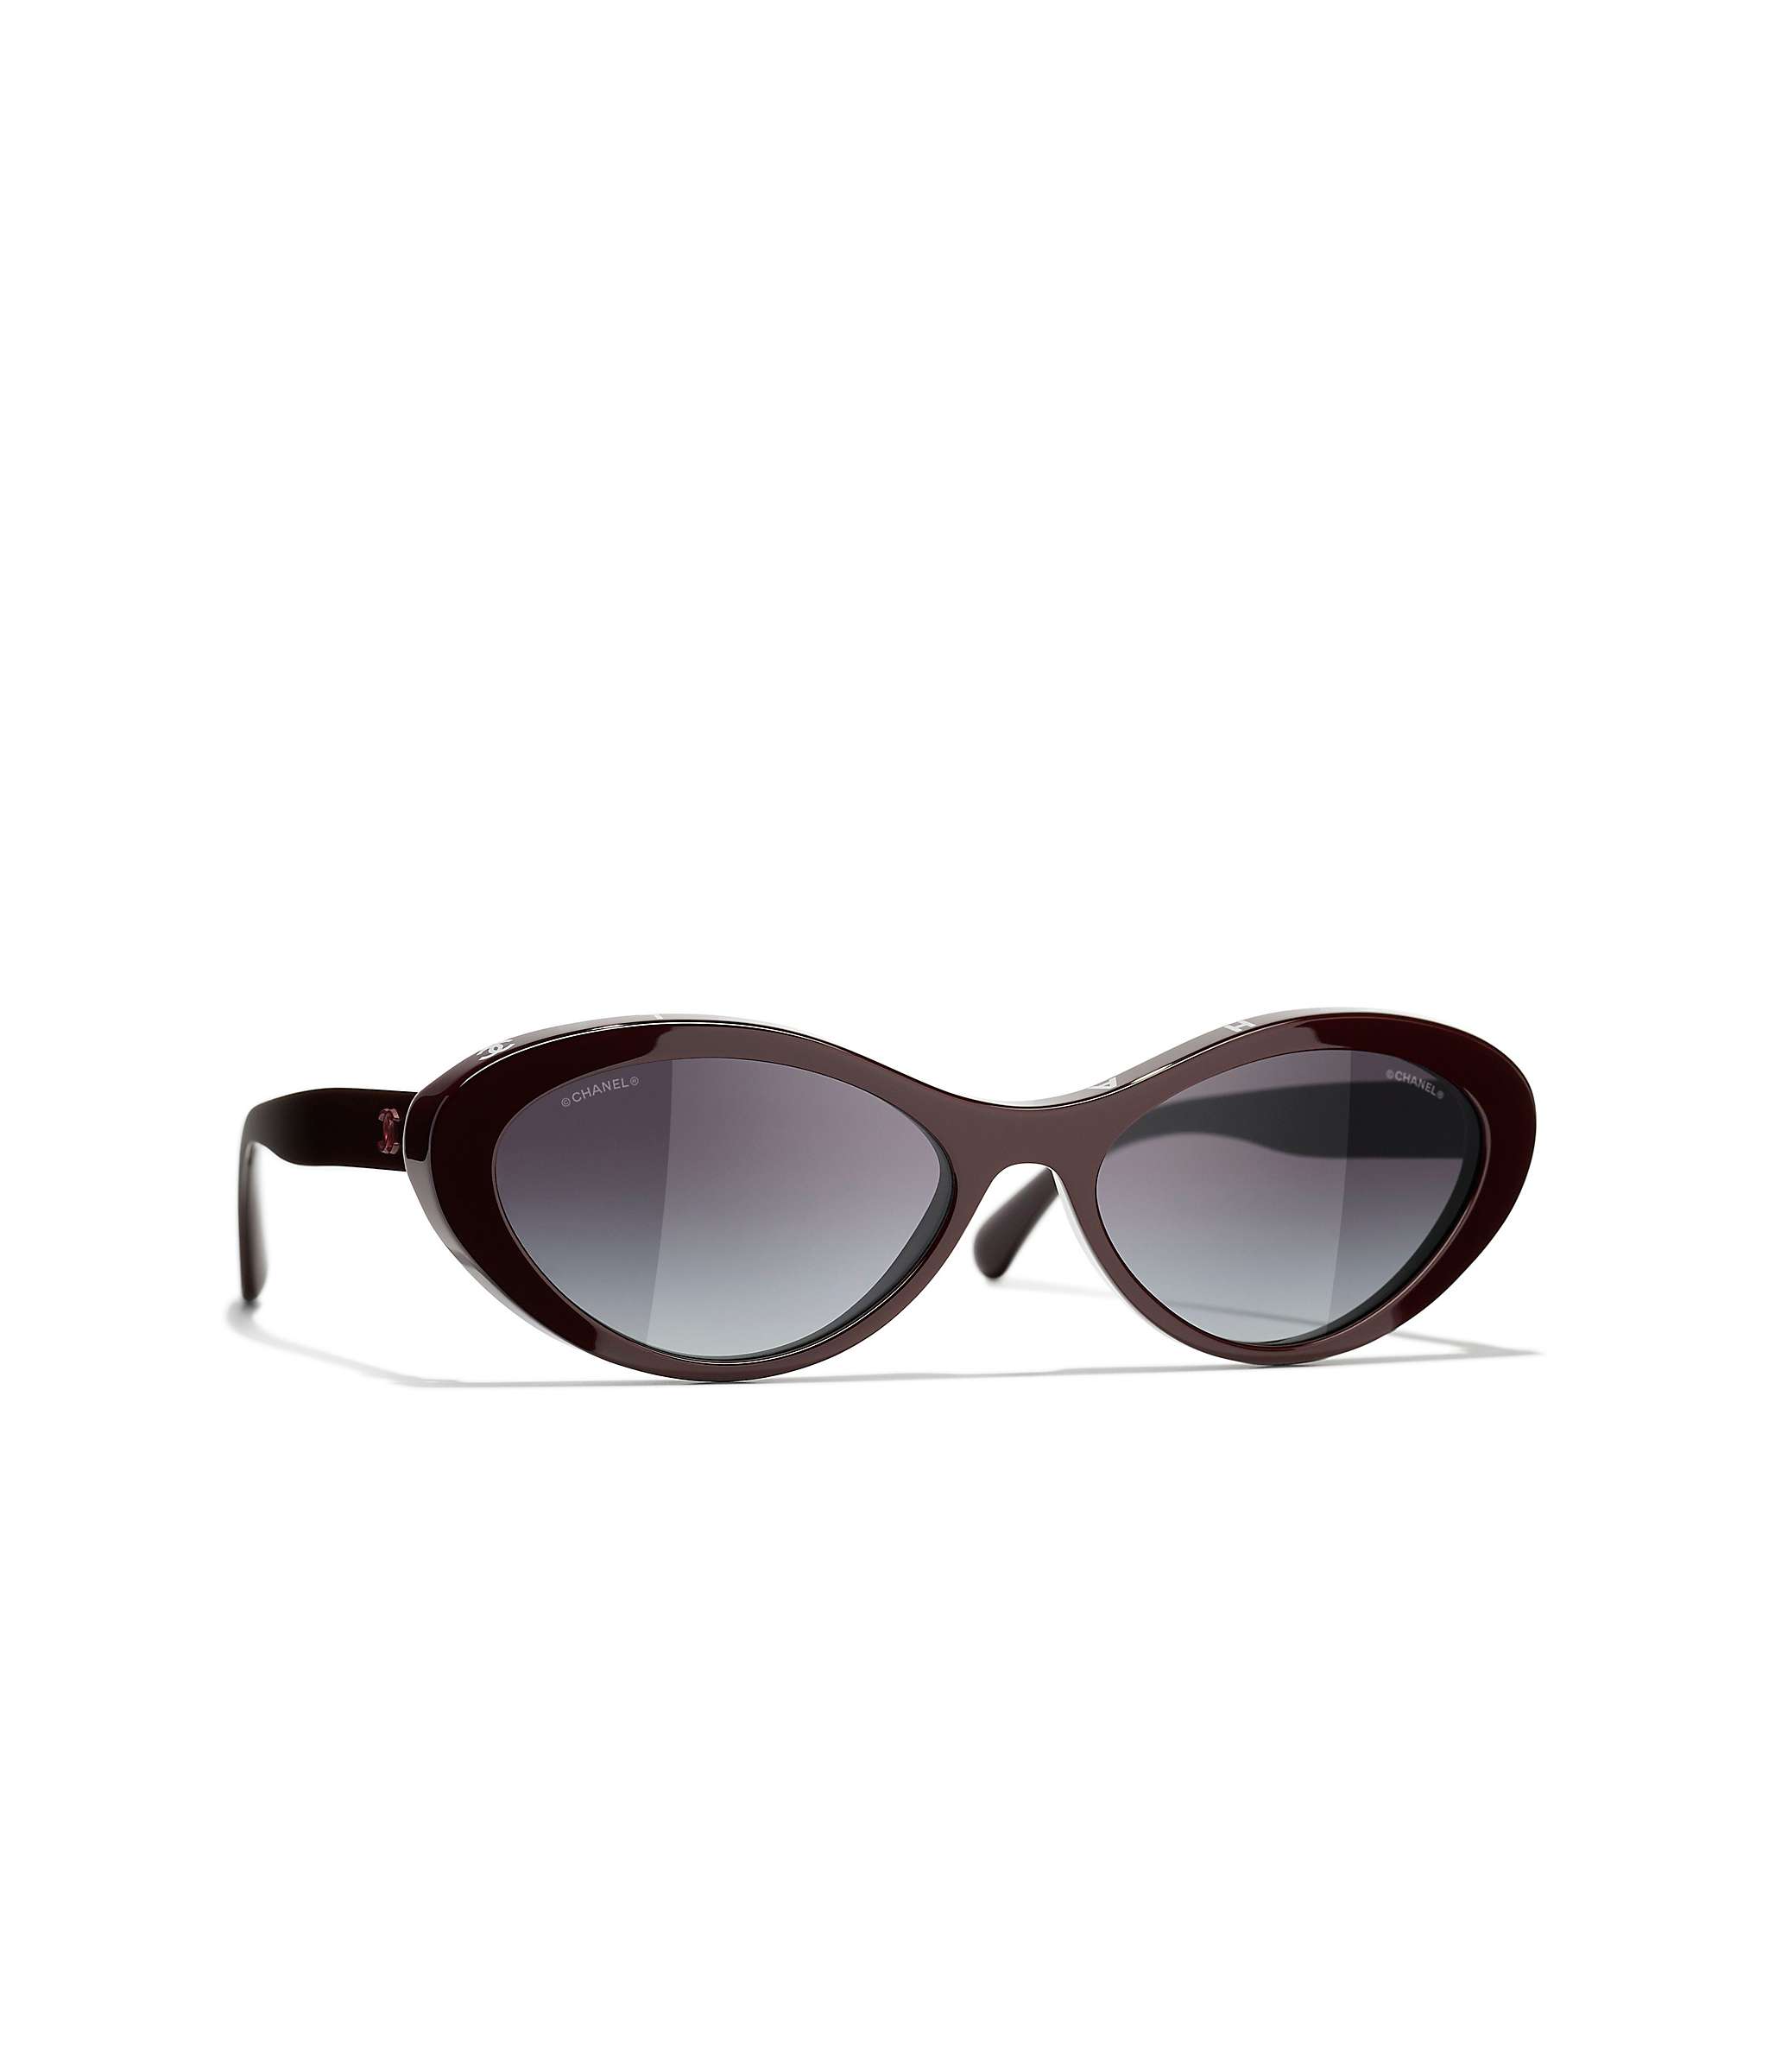 Sunglasses: Oval Sunglasses, acetate & strass — Fashion